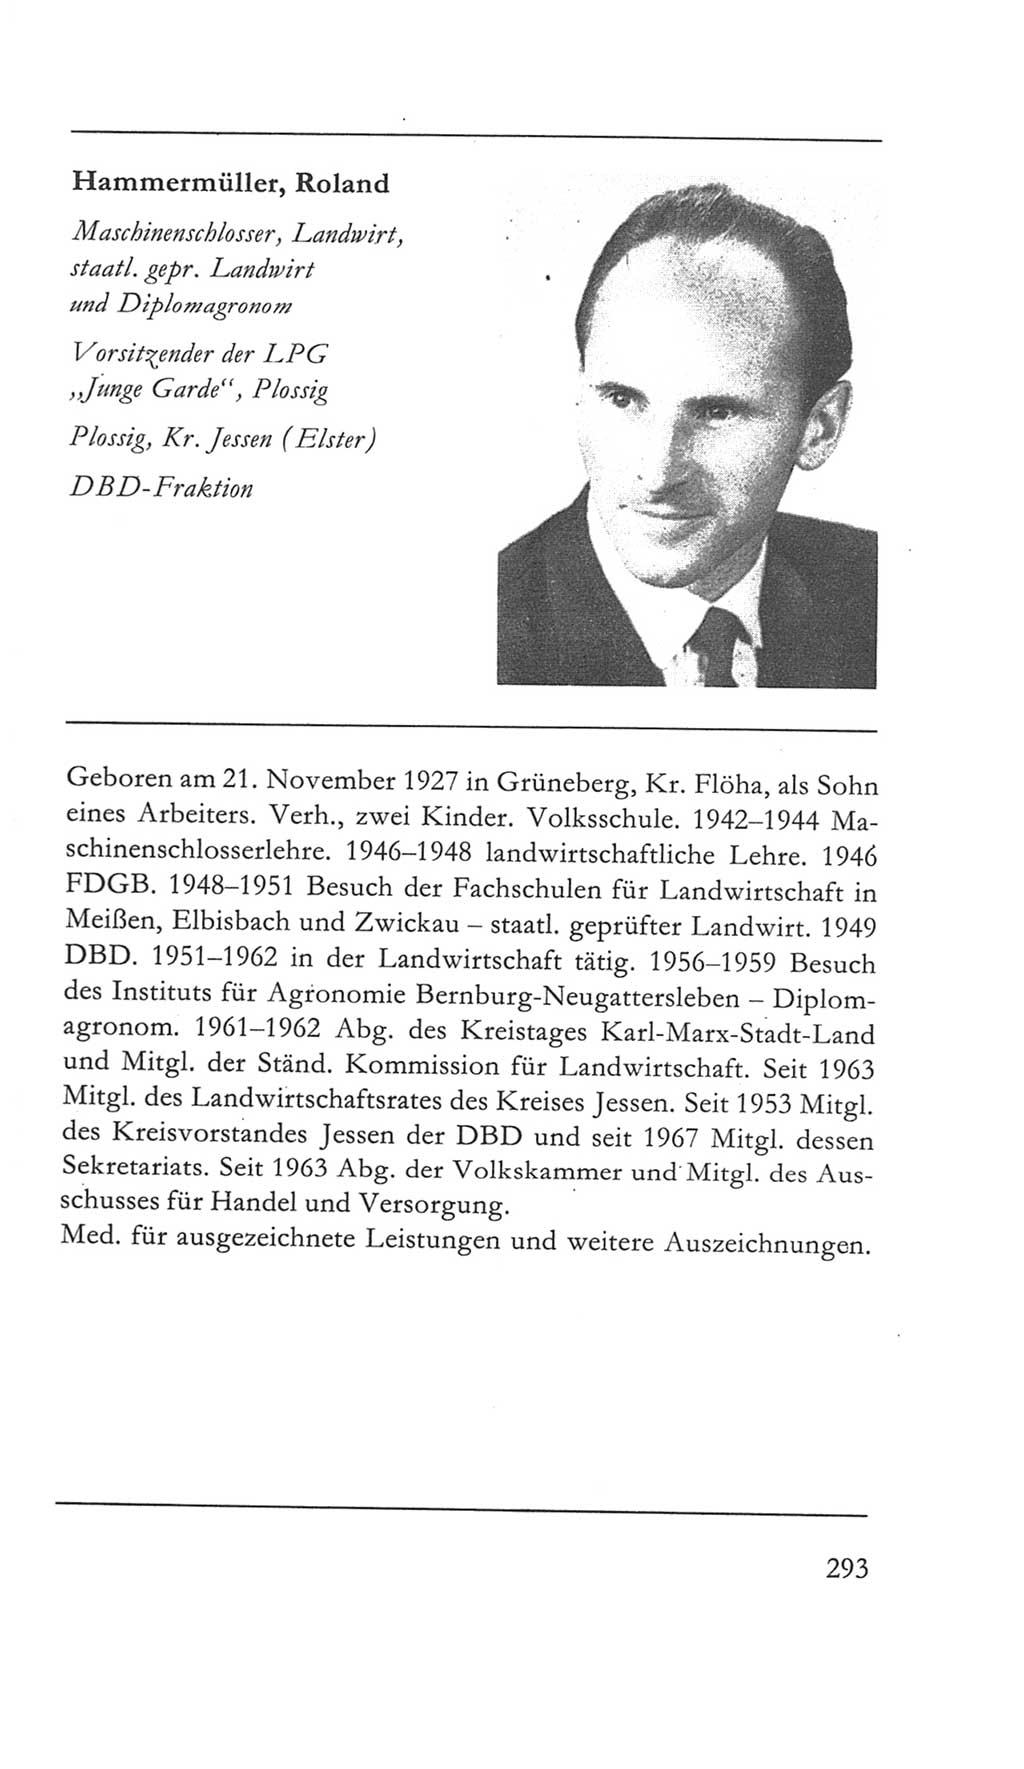 Volkskammer (VK) der Deutschen Demokratischen Republik (DDR) 5. Wahlperiode 1967-1971, Seite 293 (VK. DDR 5. WP. 1967-1971, S. 293)